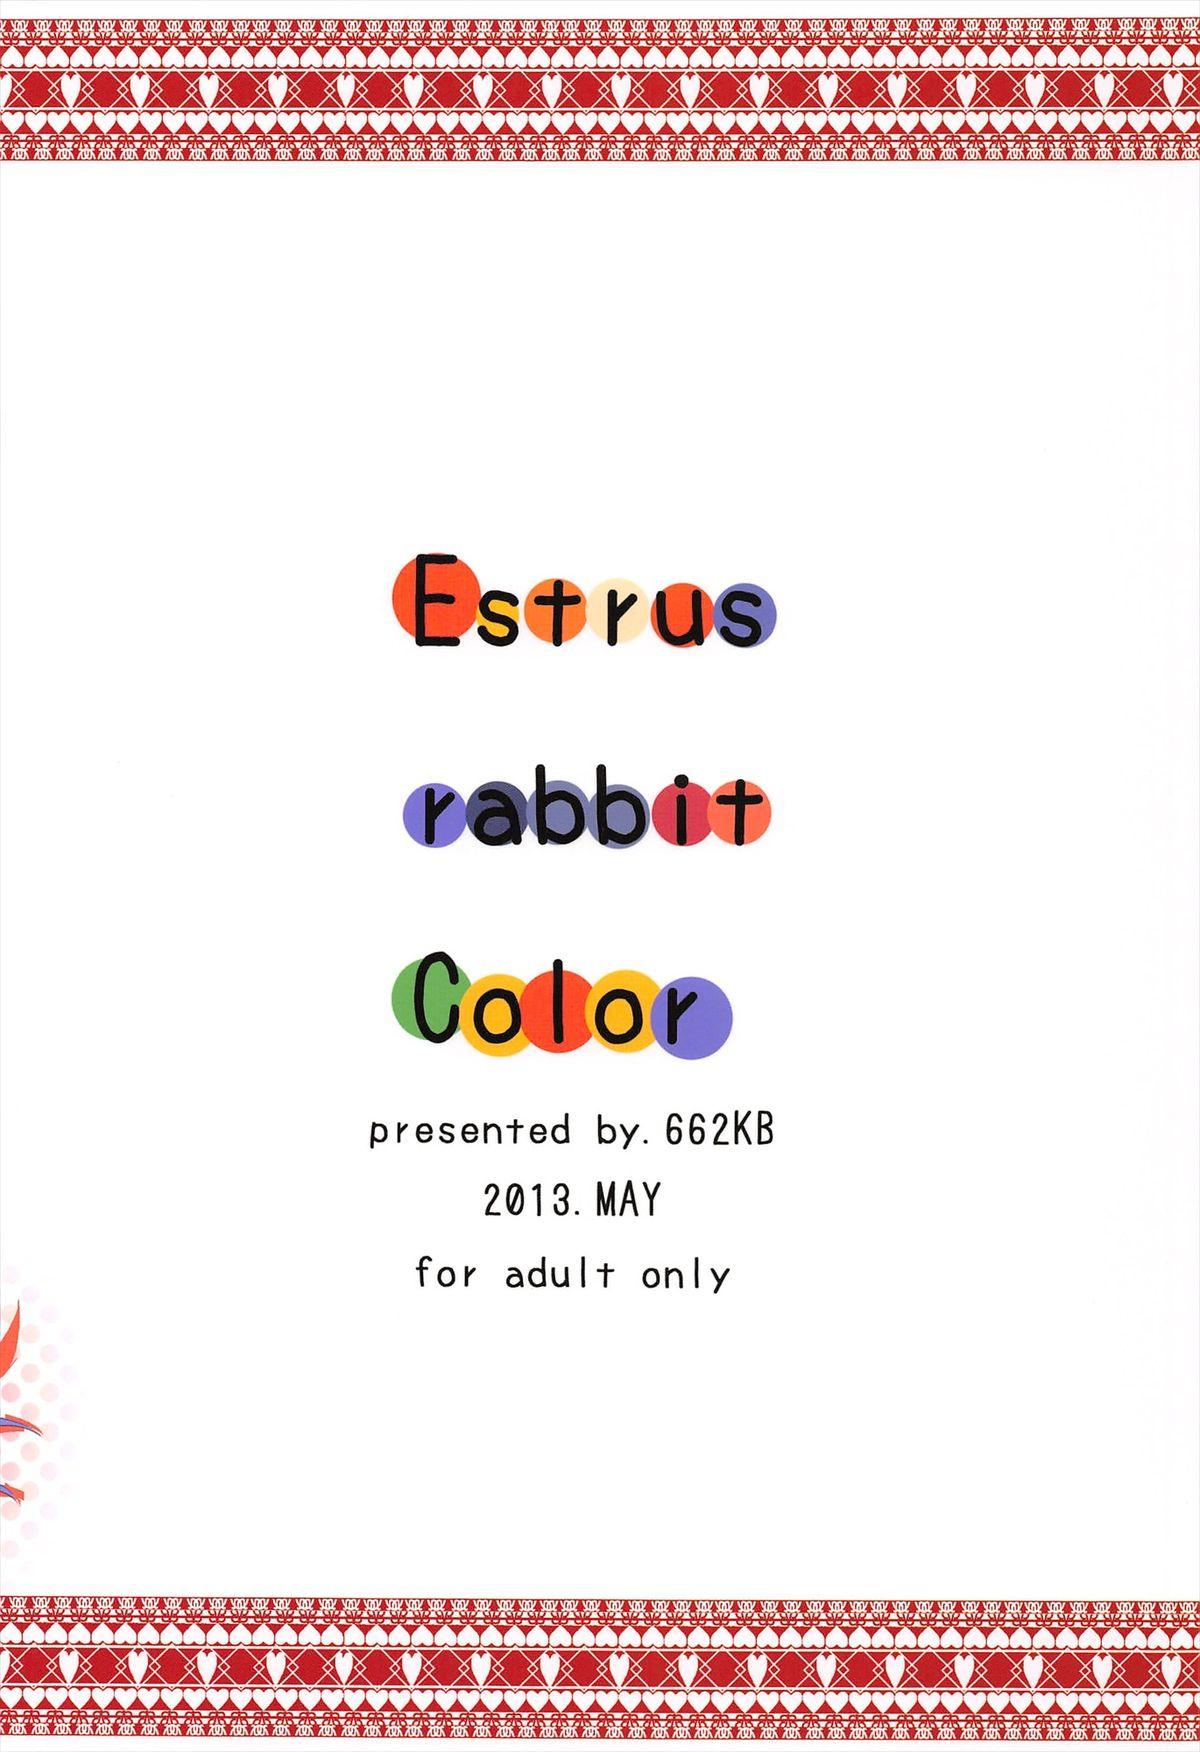 Perrito Estrus rabbit Color - Touhou project Shesafreak - Page 20